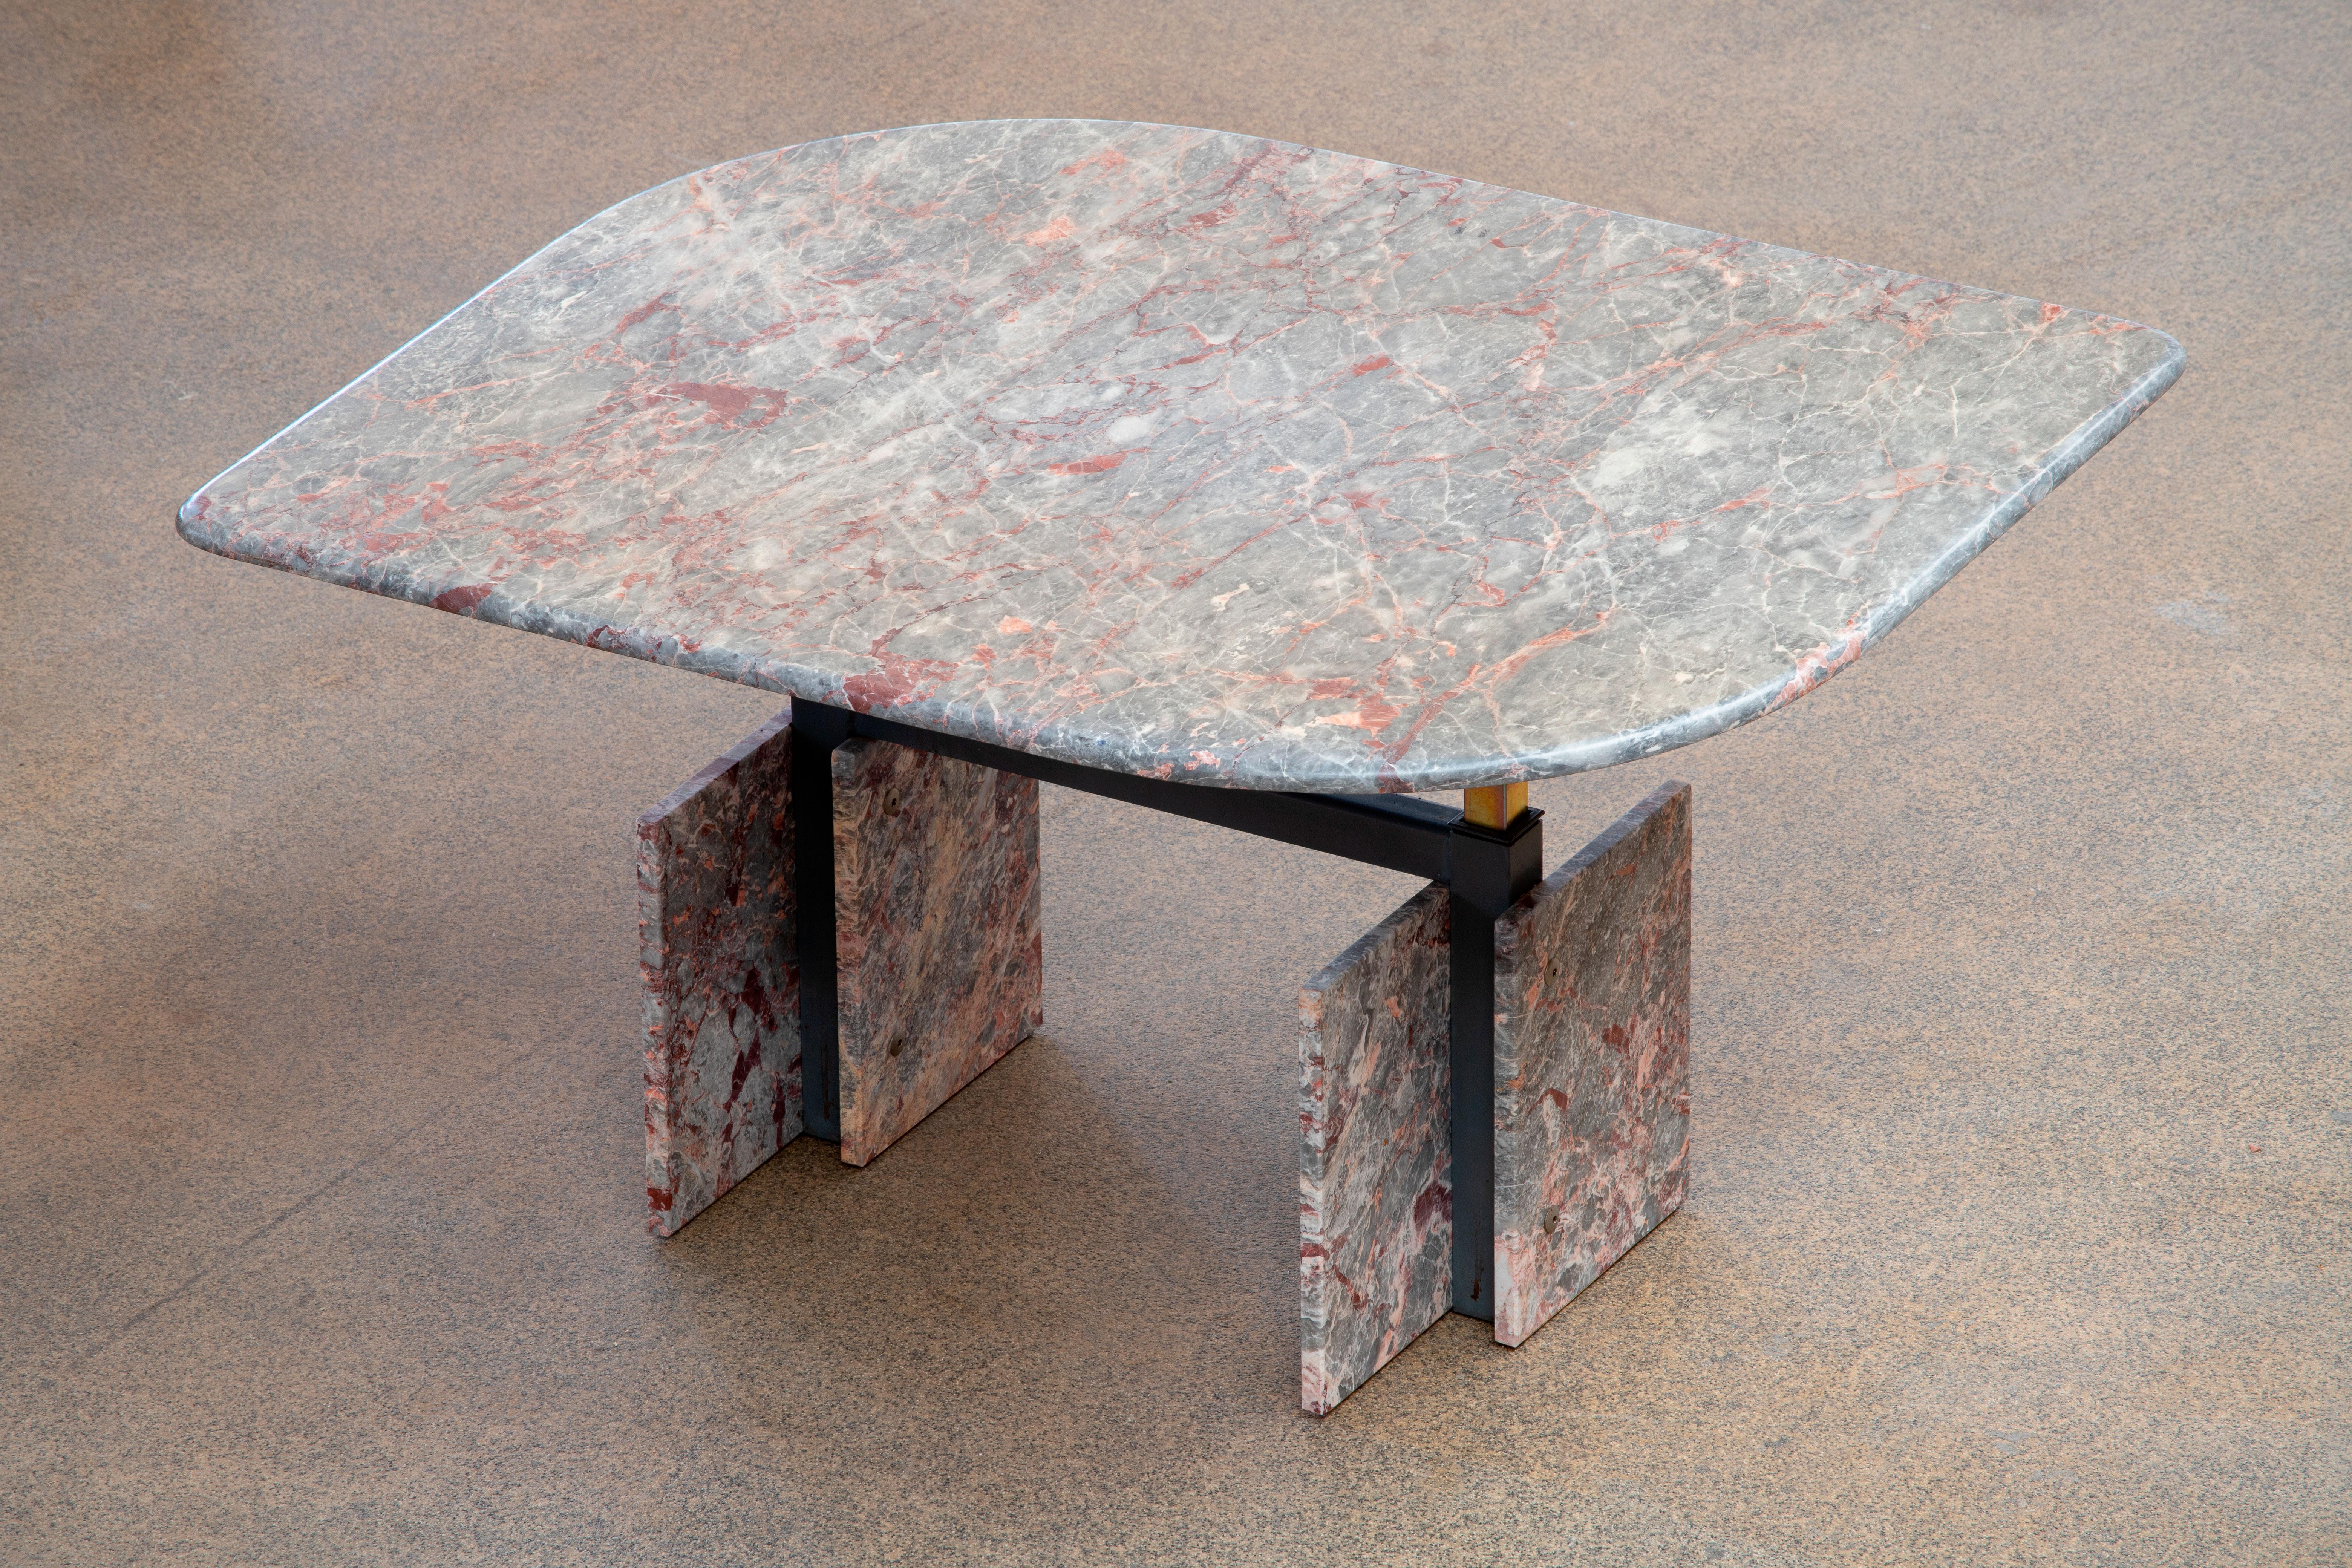 Belle table en marbre gris, beige et rose.

Le lourd plateau rehaussable en forme d'œil repose sur quatre blocs de marbre avec une structure métallique entre les deux.